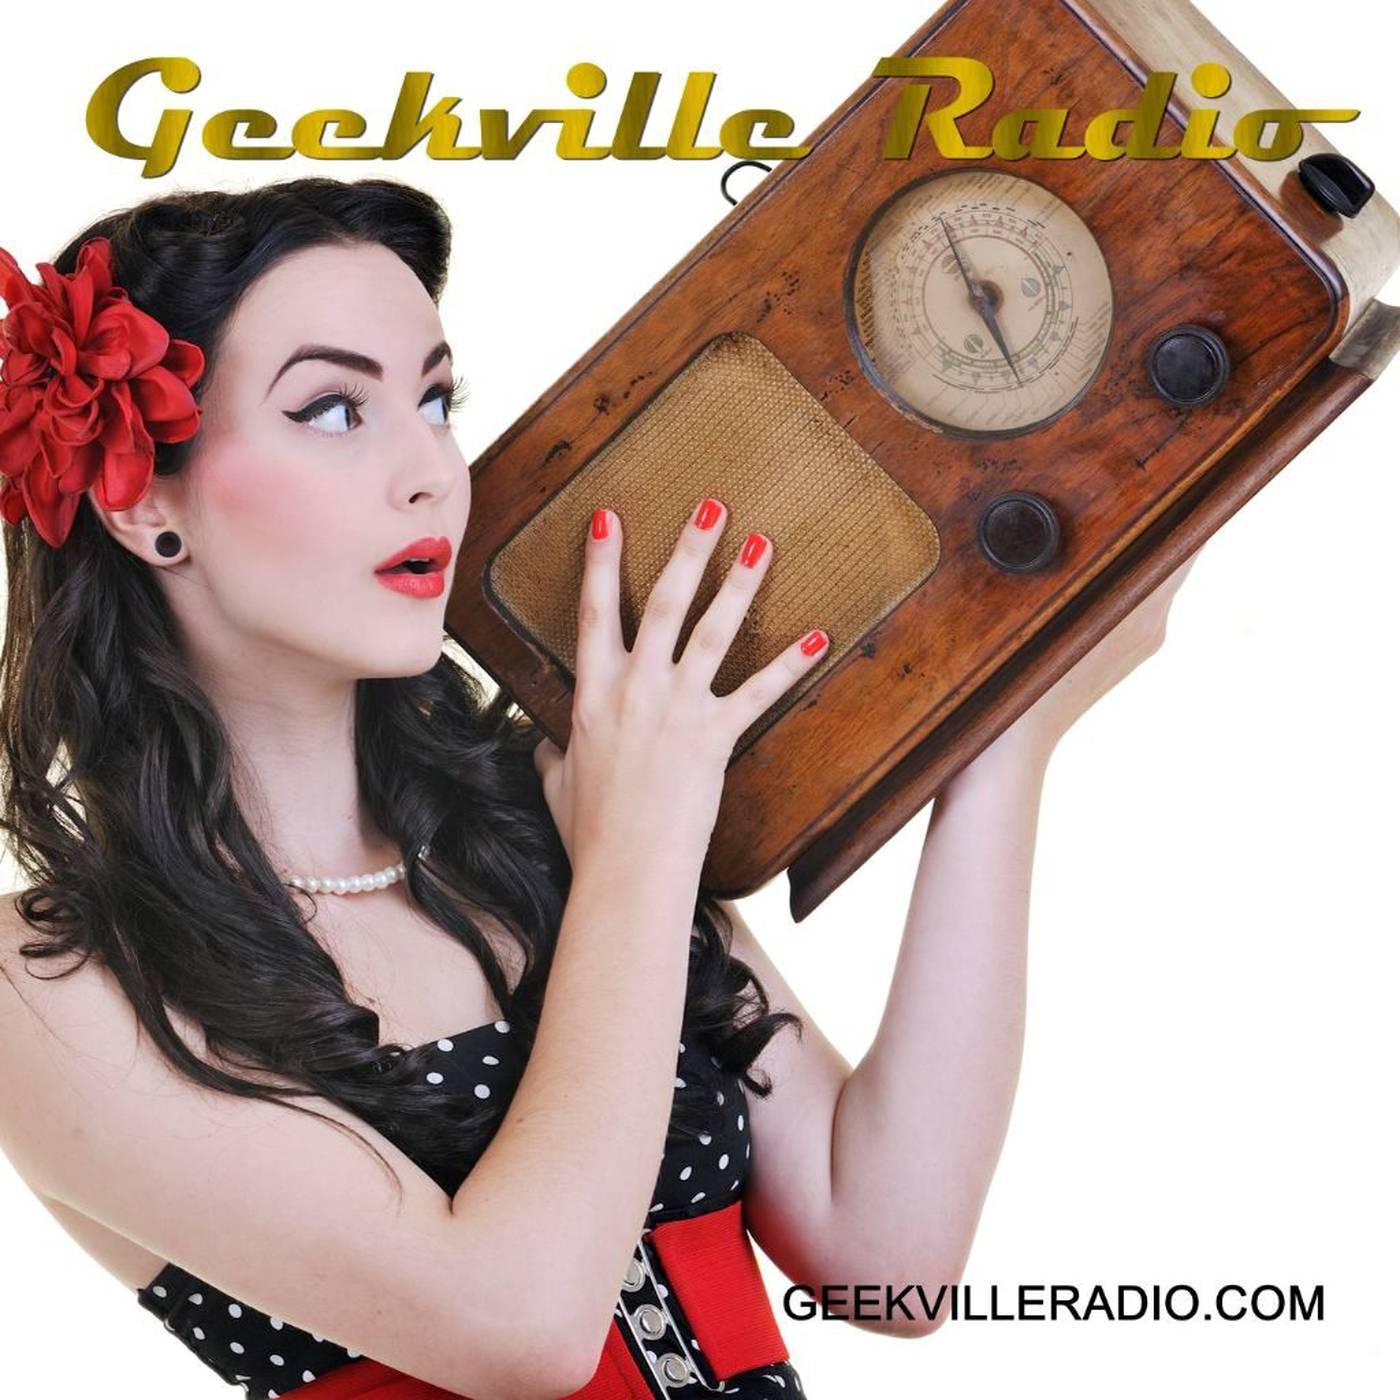 Geekville Radio Network